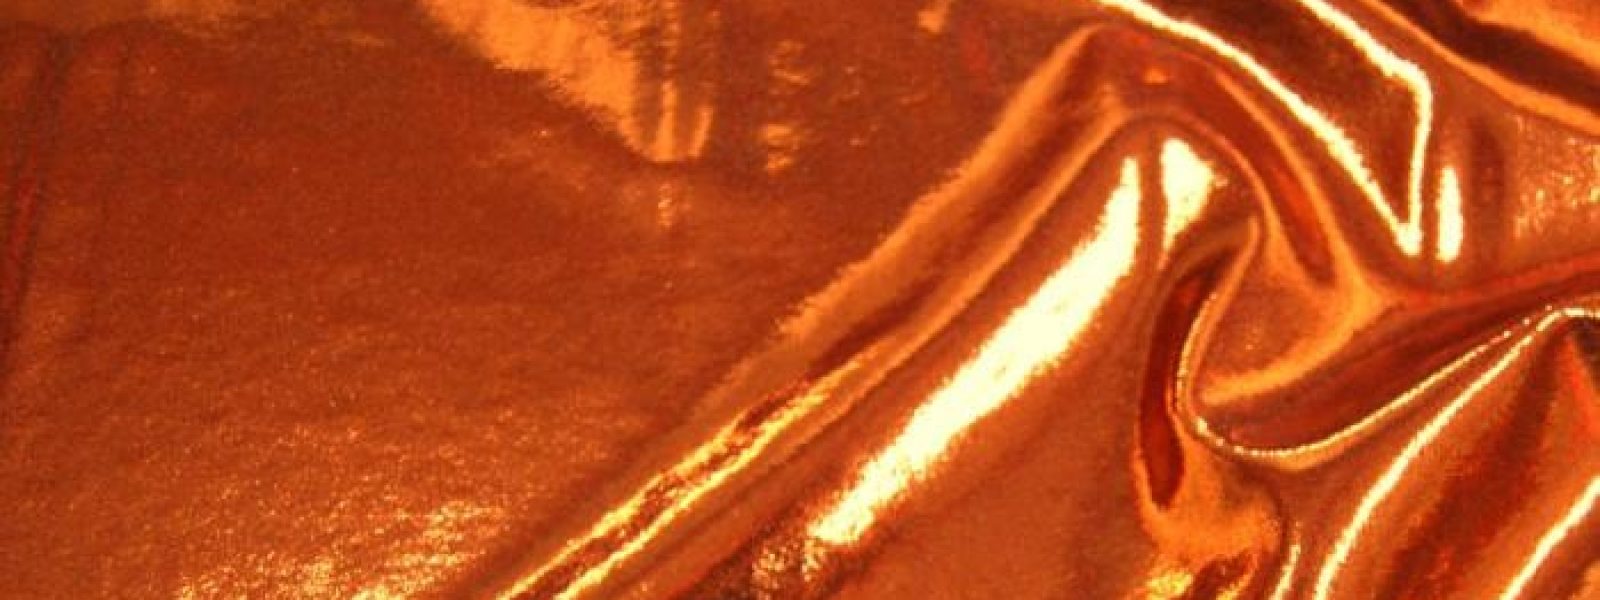 輝く地平線: 国際黄銅・銅市場の輝きを照らす